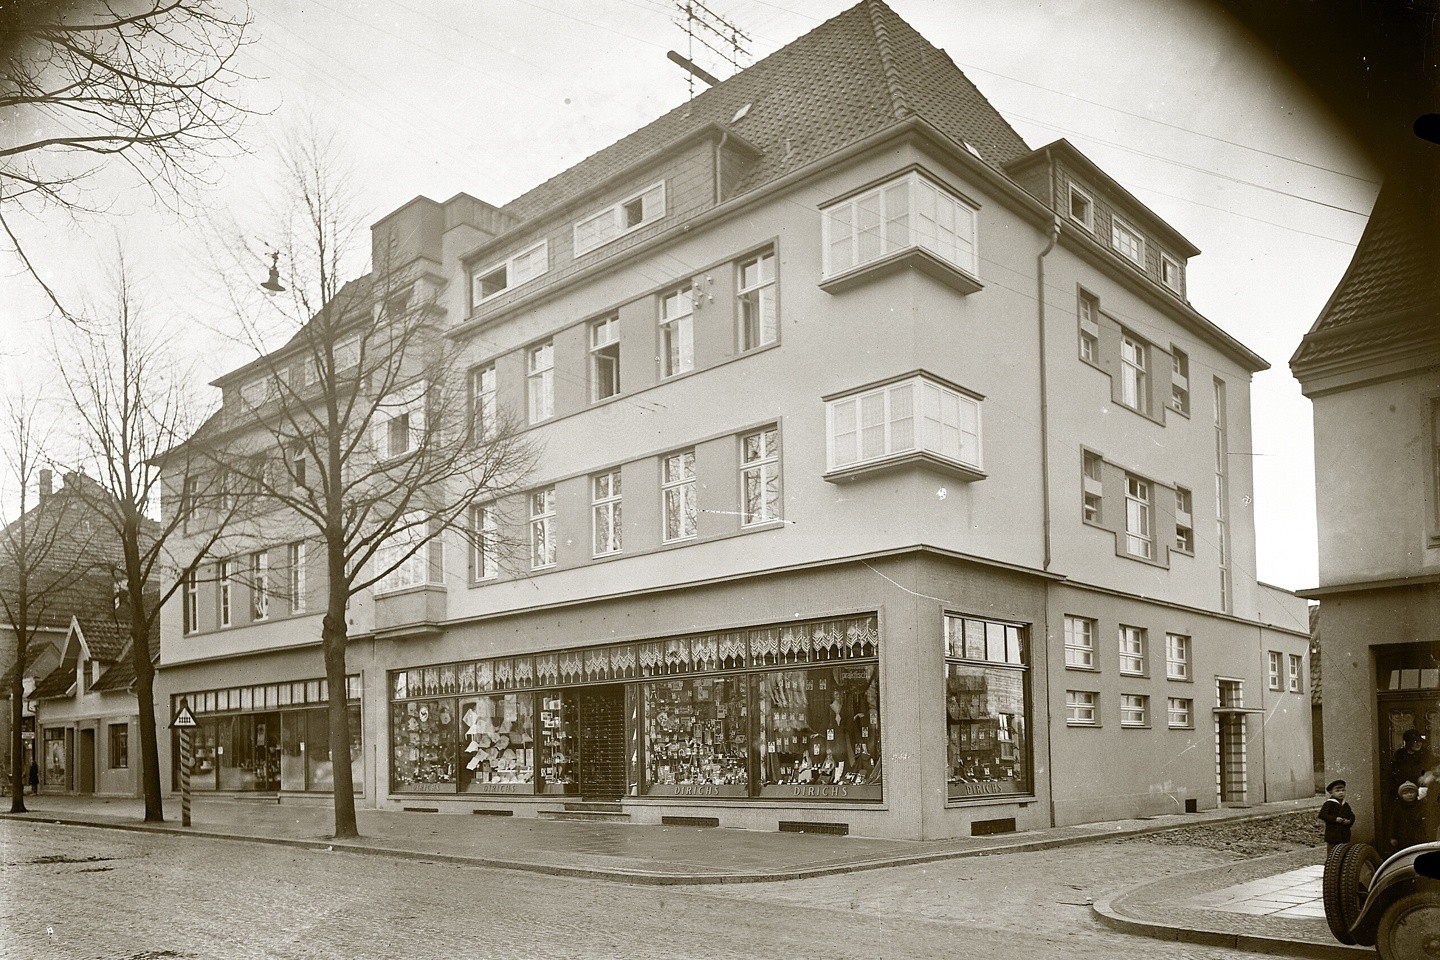 Frühere Bad Driburger Geschäfte - Teil 16, Archiv Meiners, Porzellanhaus Adolf Dirichs, Textilhaus Dieler, 